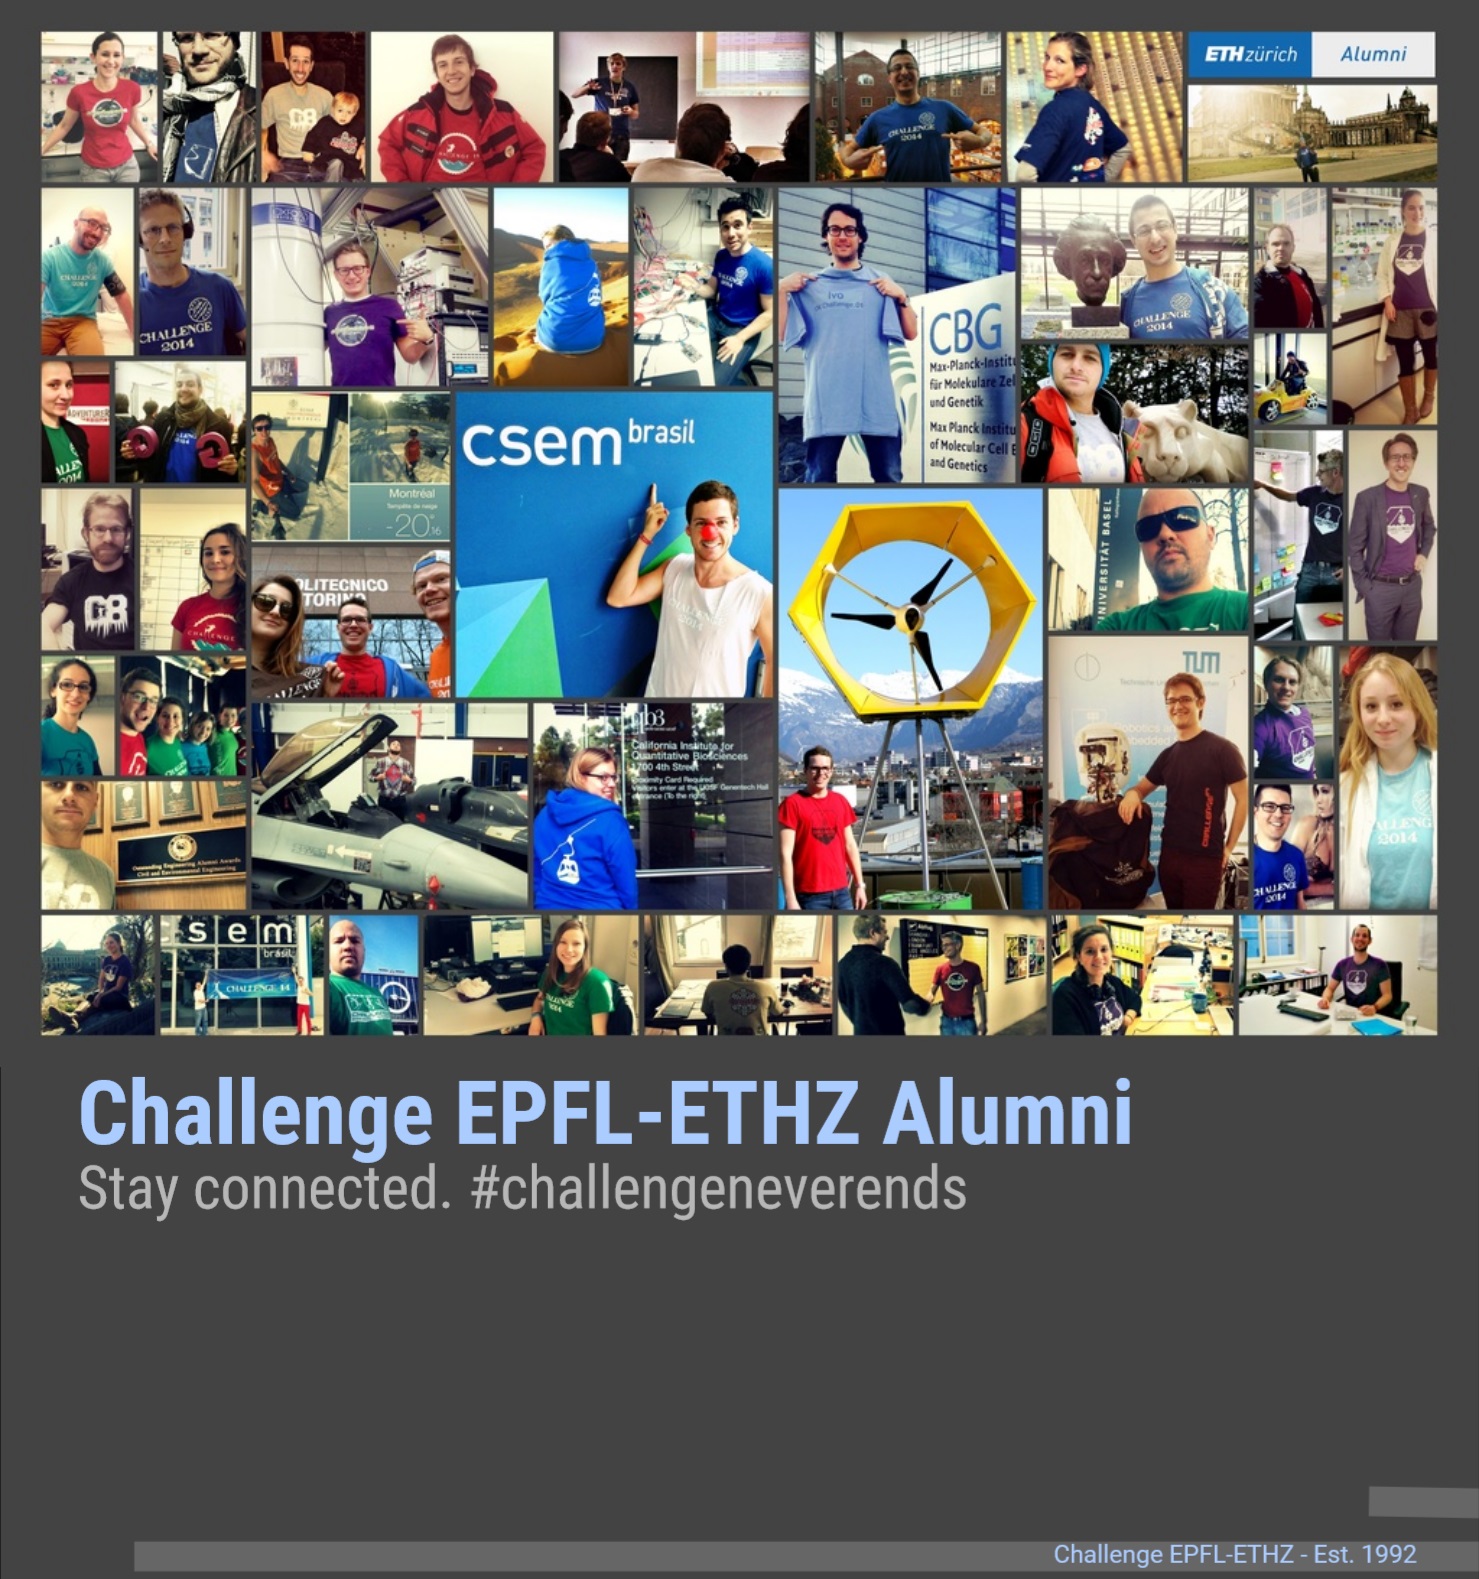 Enlarged view: Challenge EPFL-ETHZ Alumni